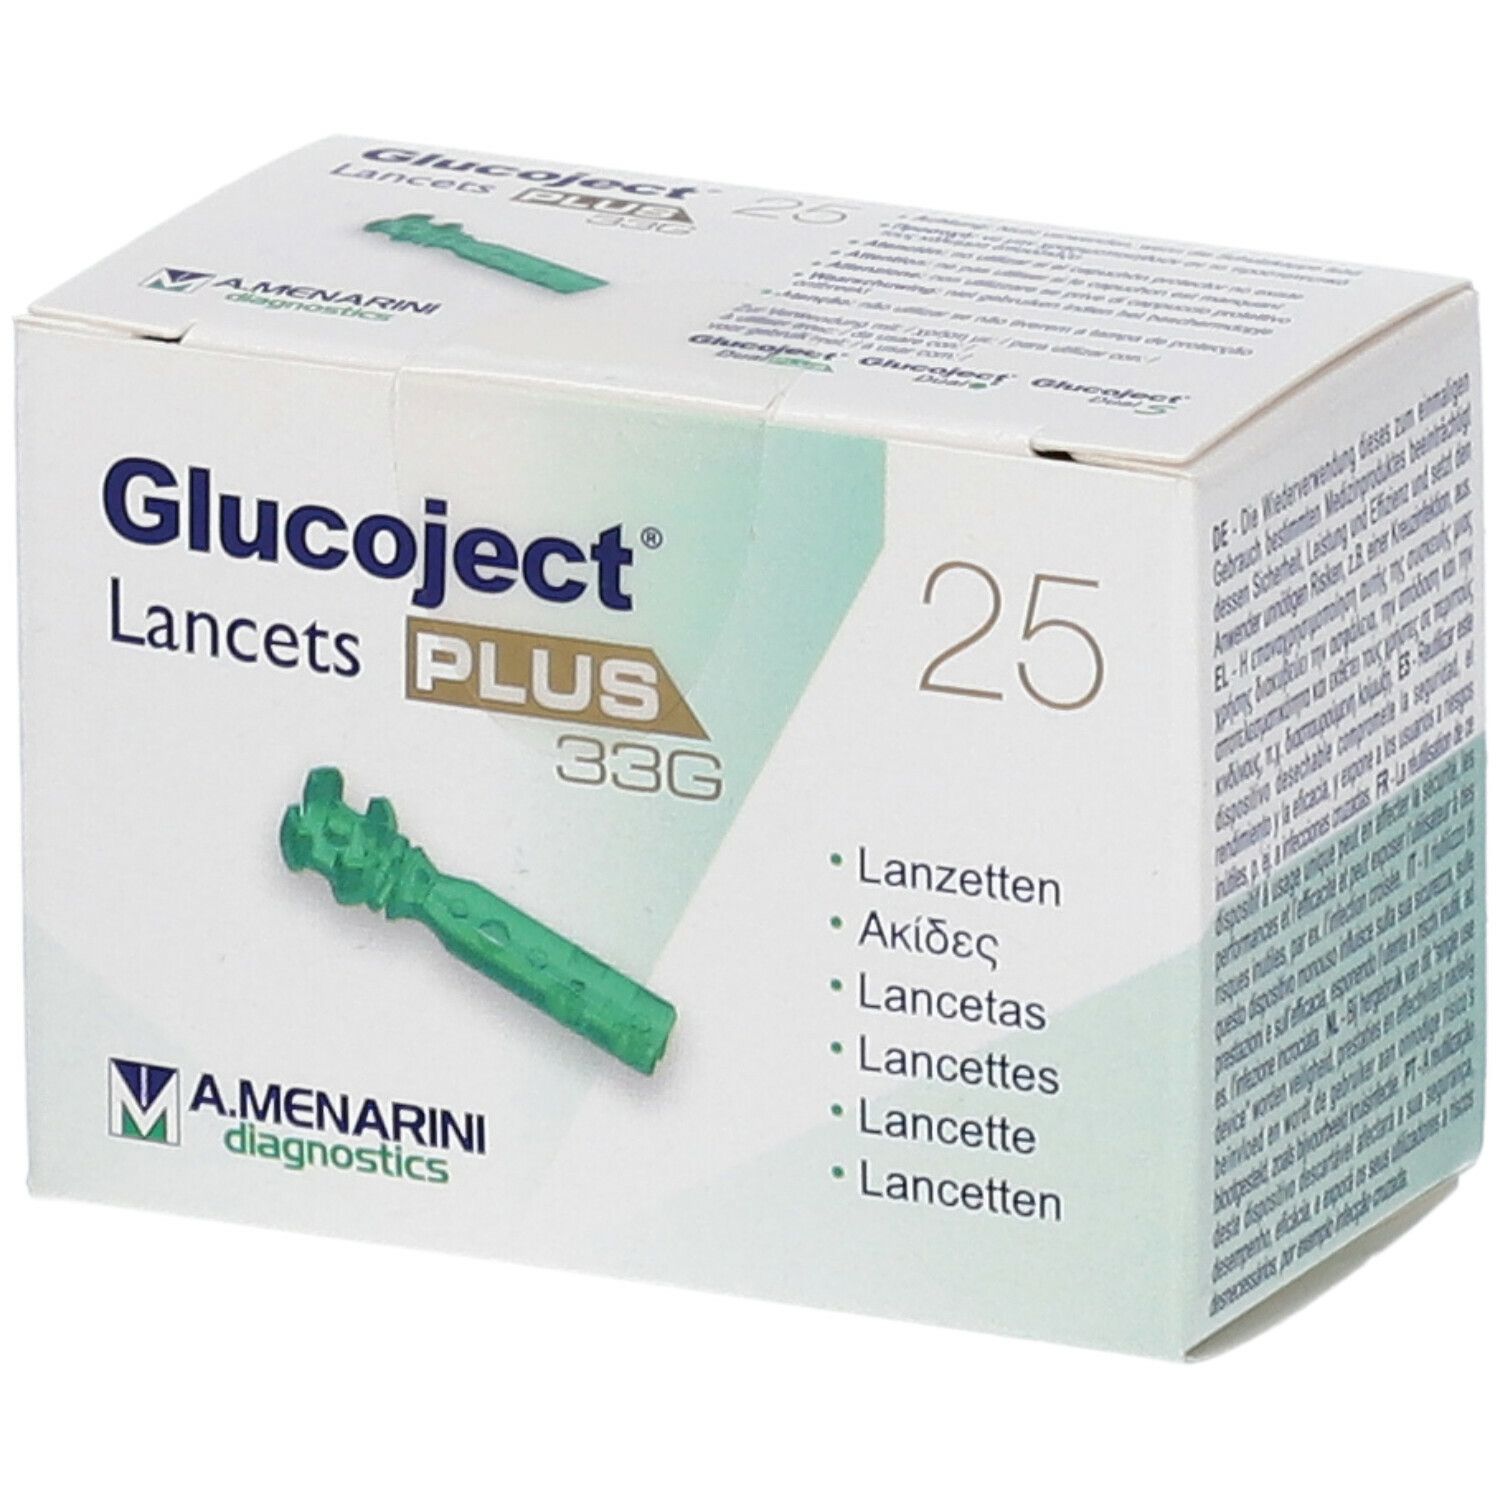 Glucoject® Lancets Plus 33G 25 Lancette